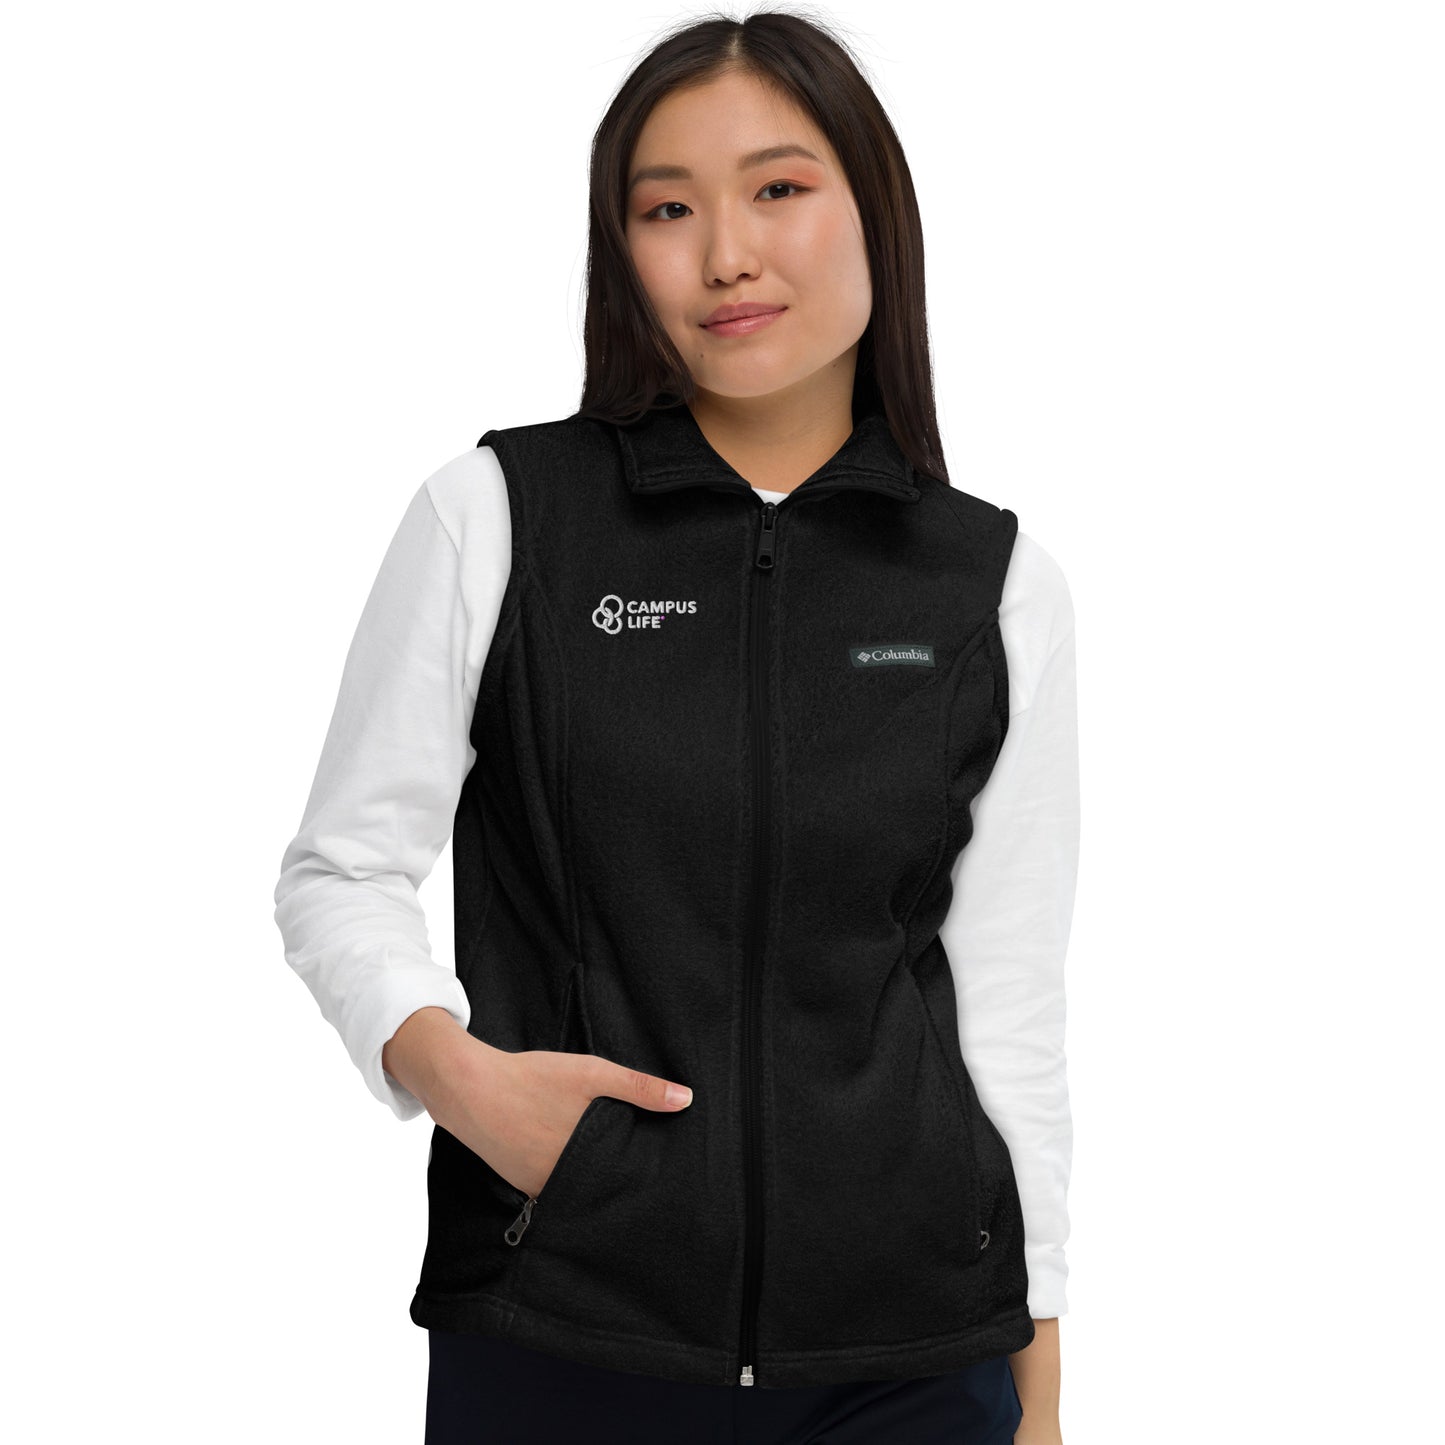 Campus Life Women’s Columbia Fleece Vest